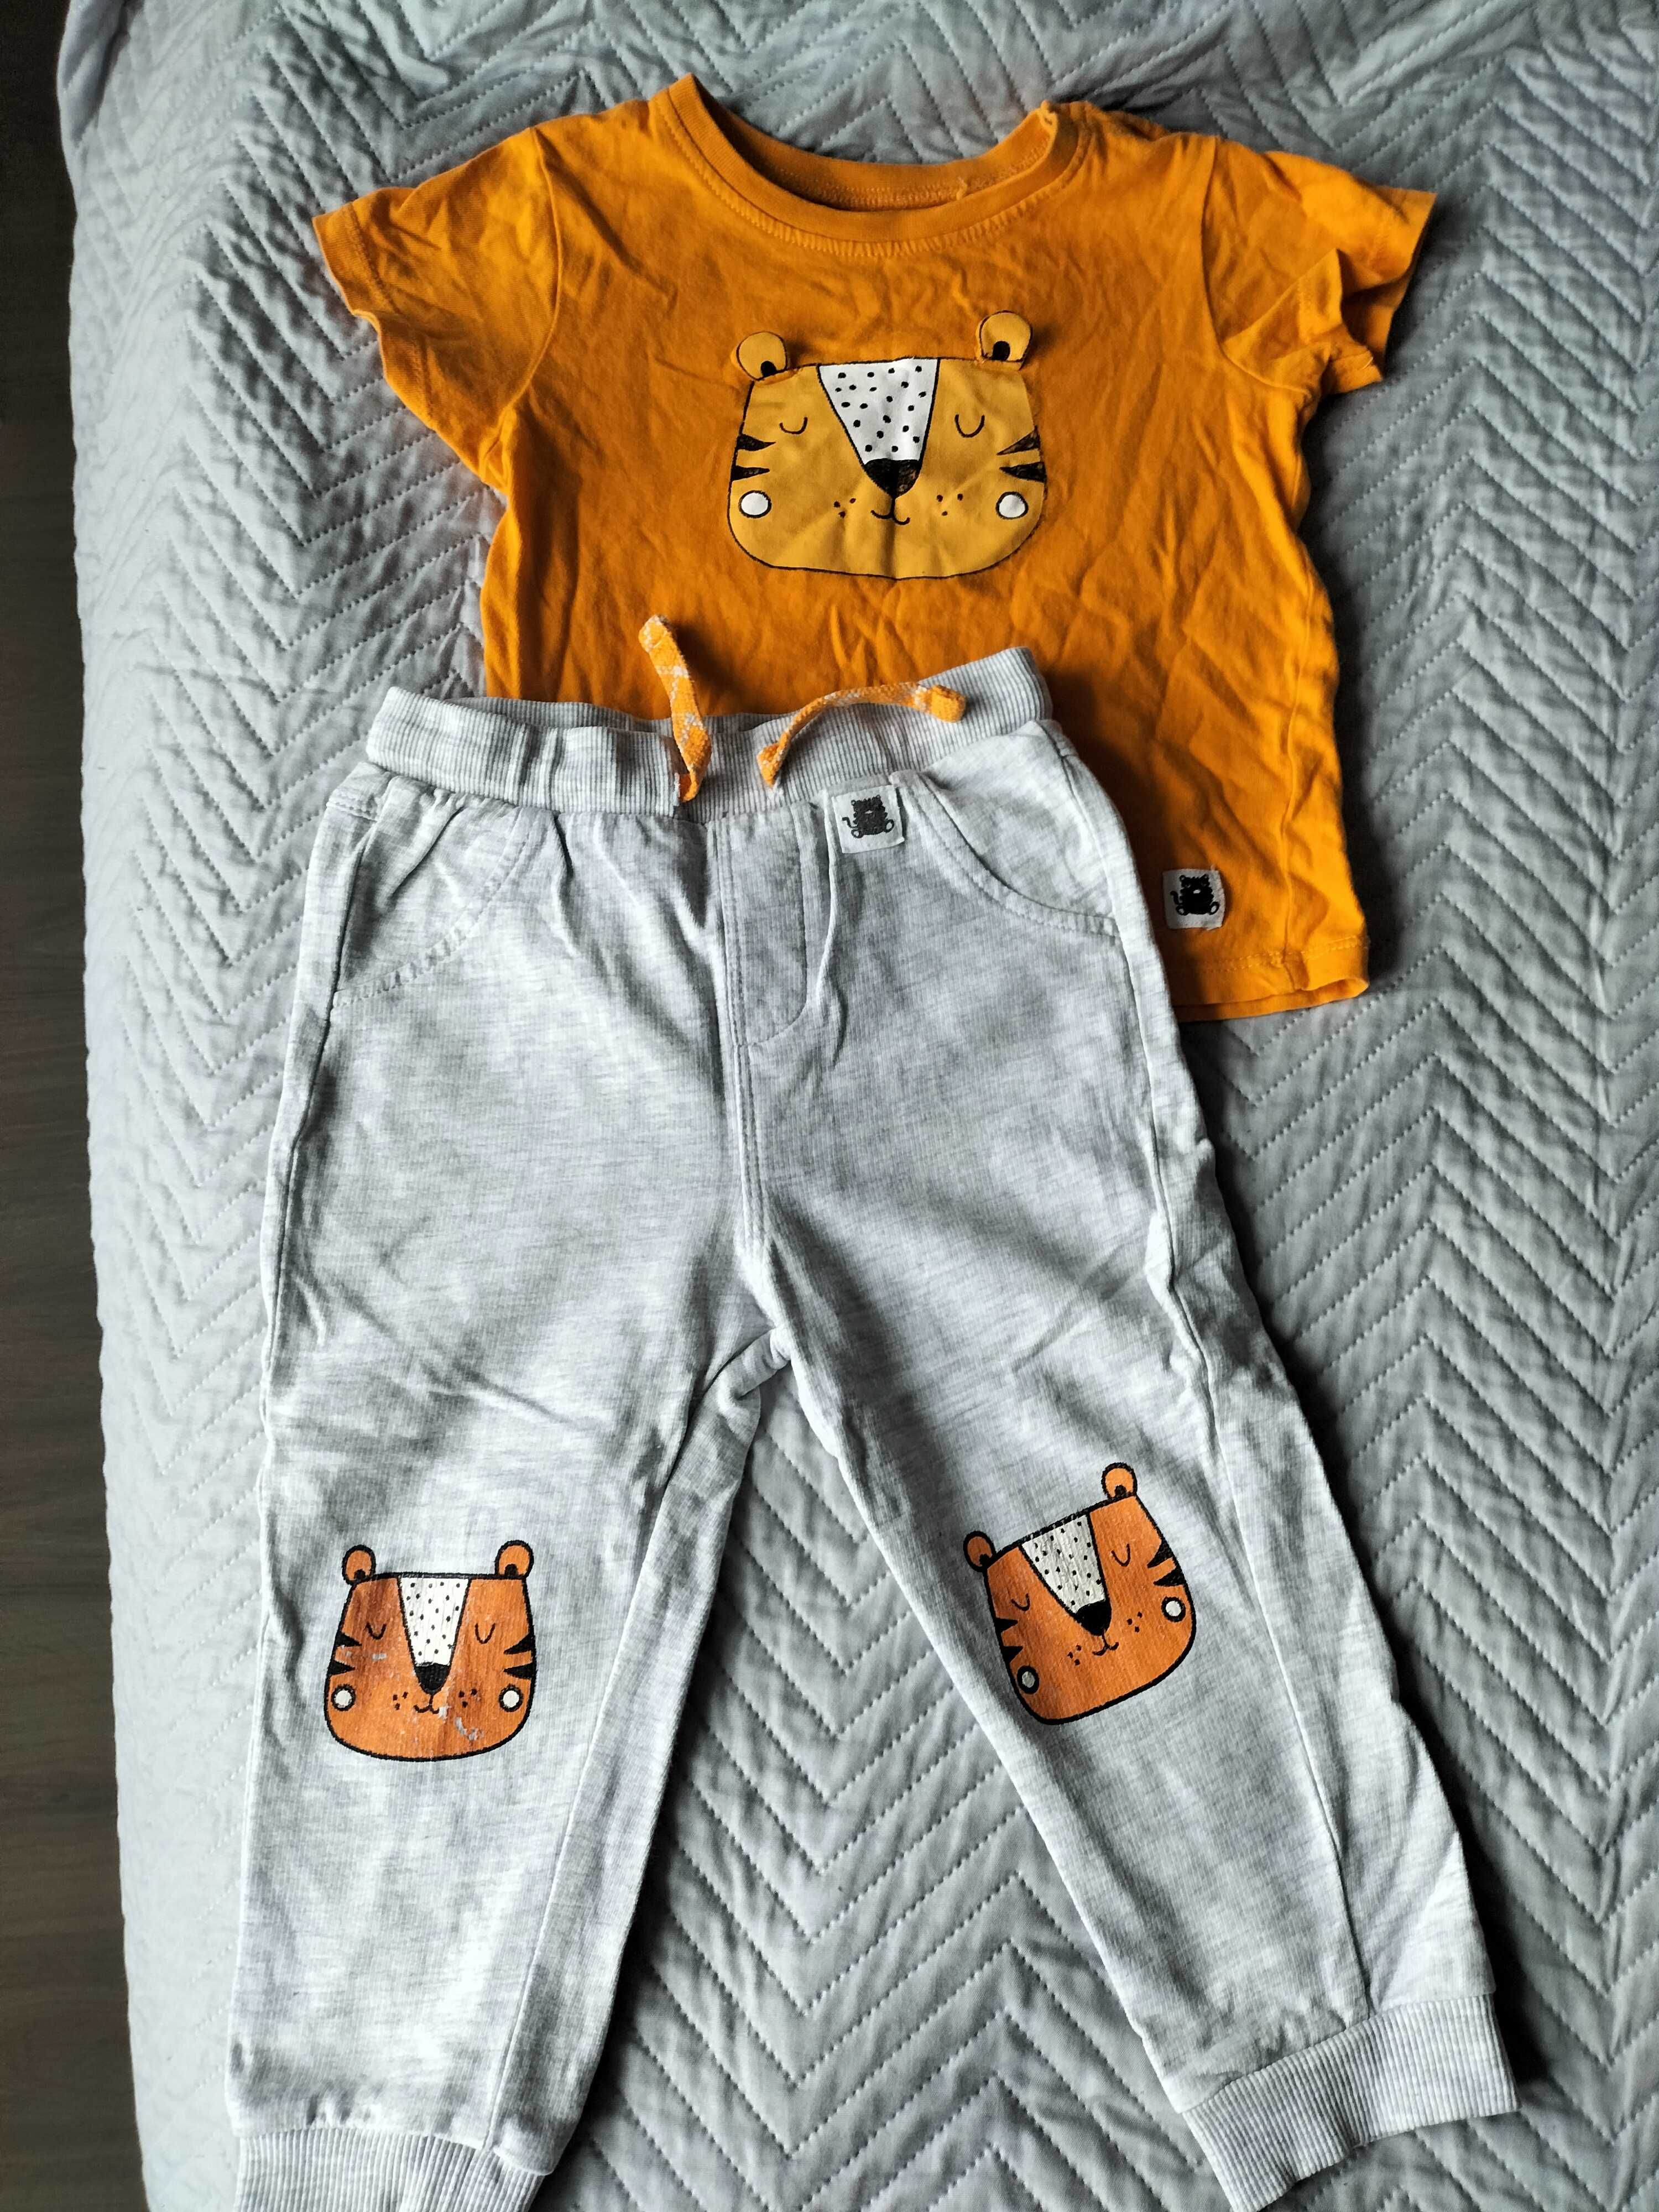 Spodnie dla chłopca i koszulki 86